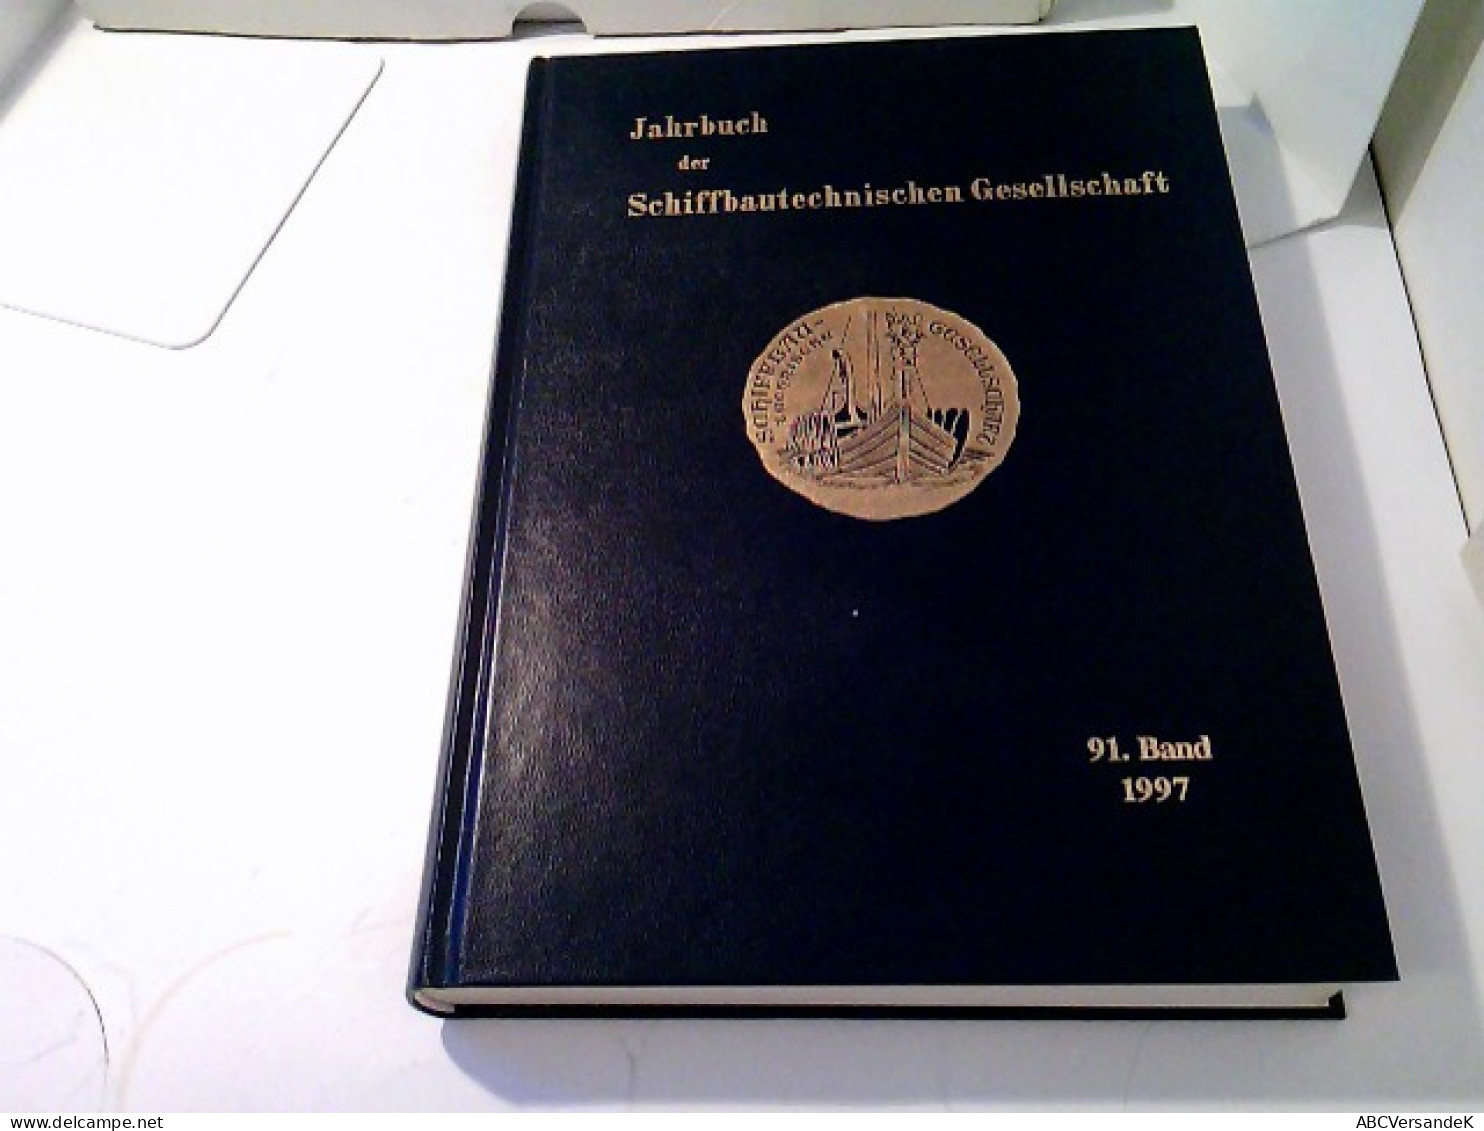 Jahrbuch Der Schiffbautechnischen Gesellschaft 91.Band 1997 - Transports